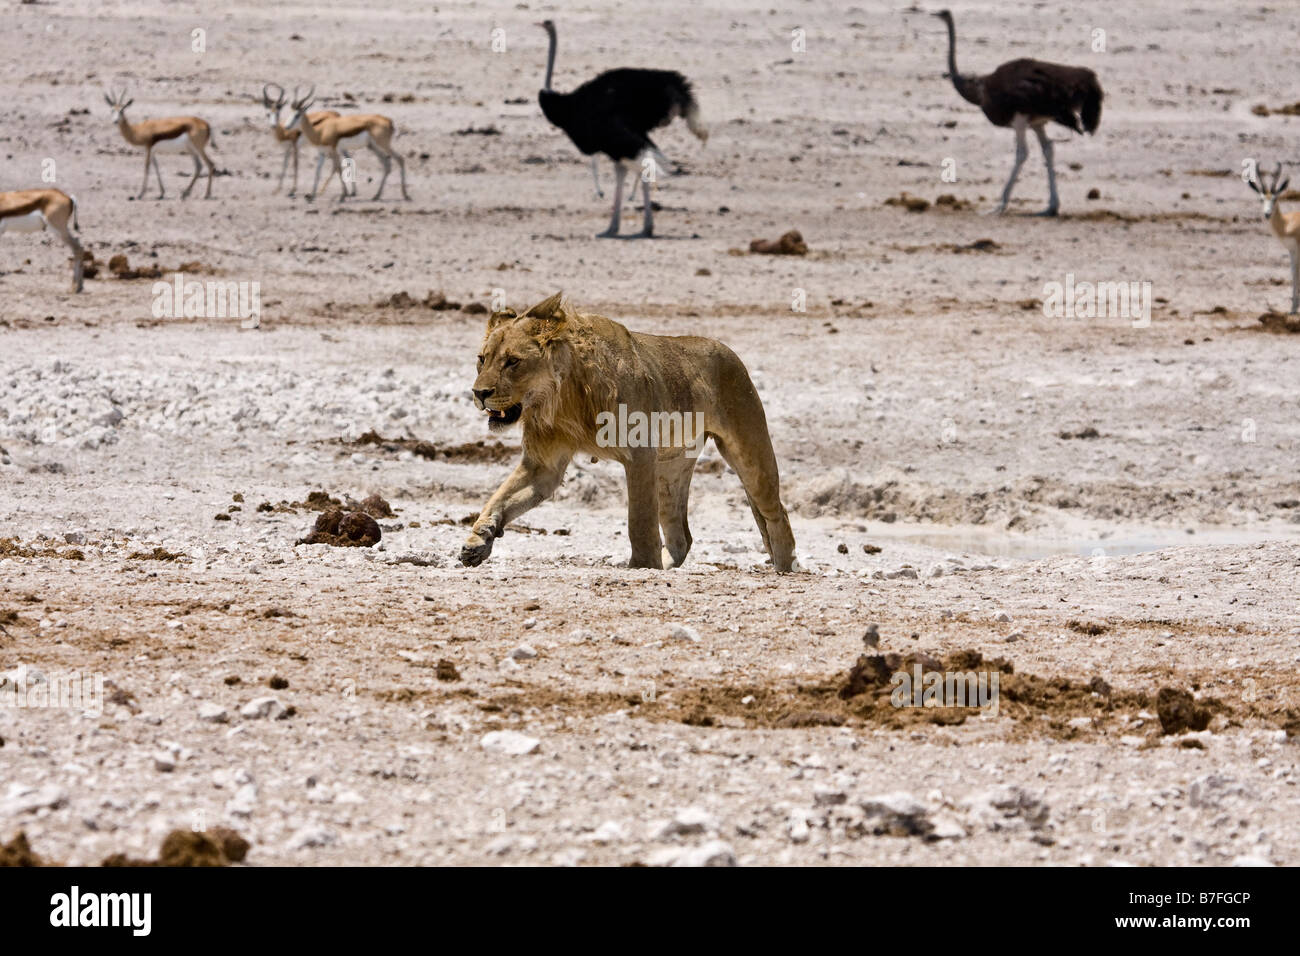 lion prowling at waterhole Stock Photo